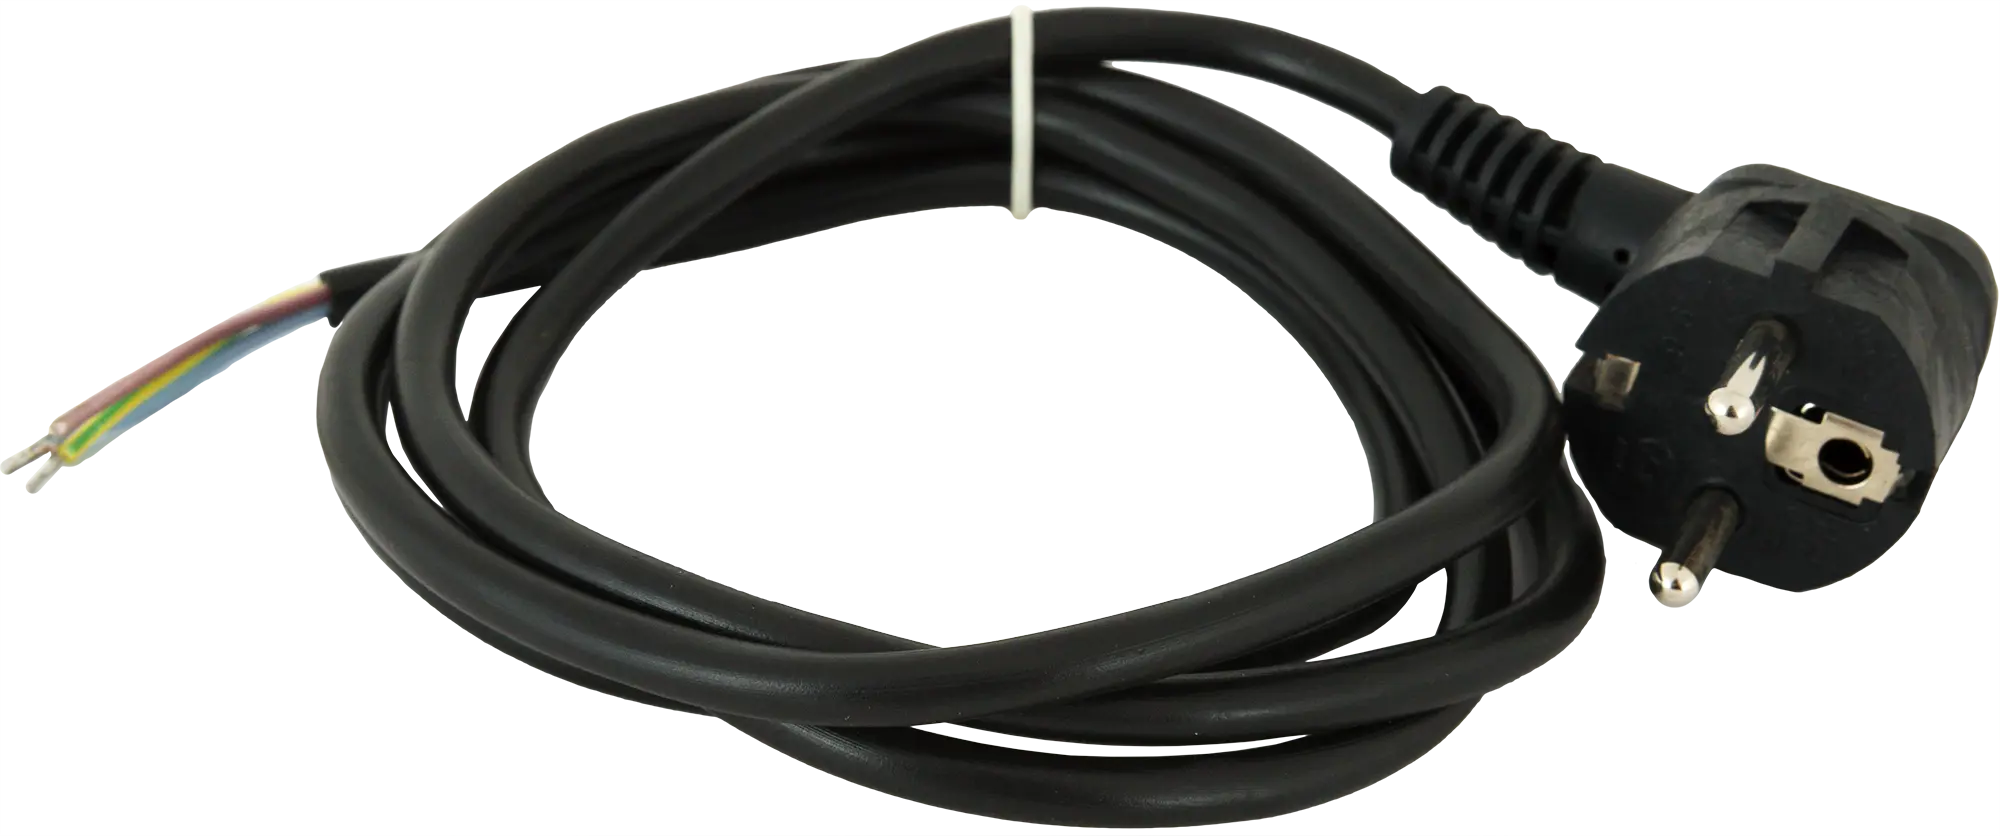 Шнур сетевой с заземлением 16 A 1.5 м цвет чёрный шнур сетевой с выключателем 1 9 м чёрный